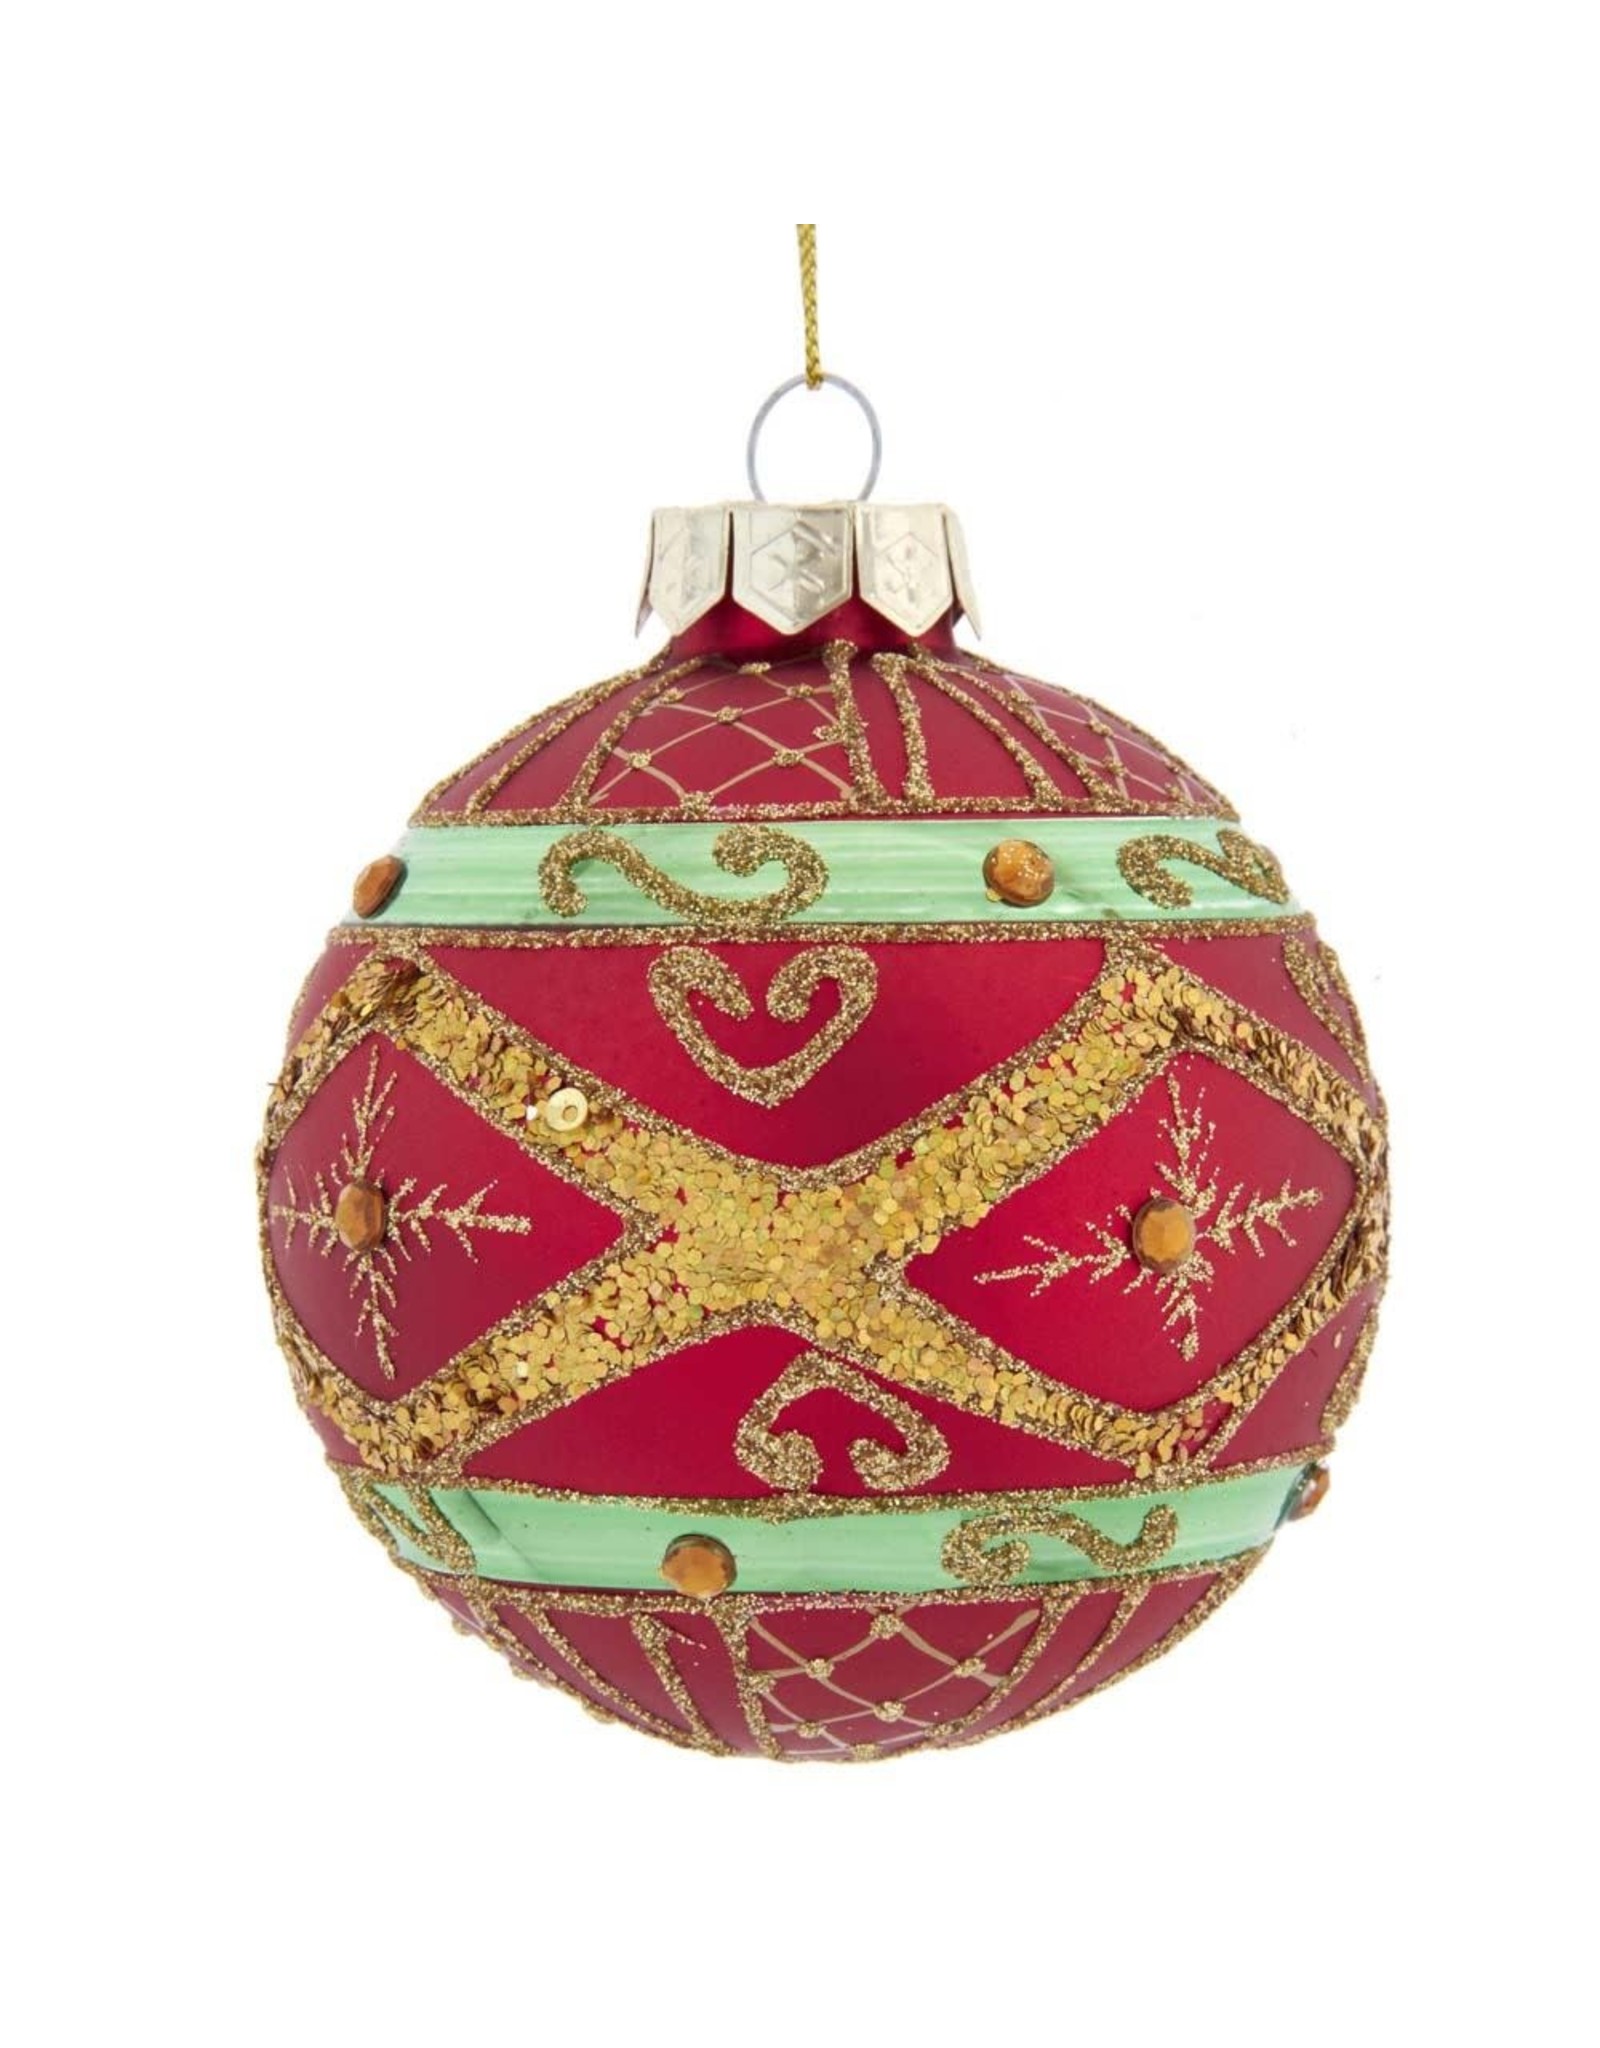 Kurt Adler Red Green Gold Glass Ball Ornaments Set of 6